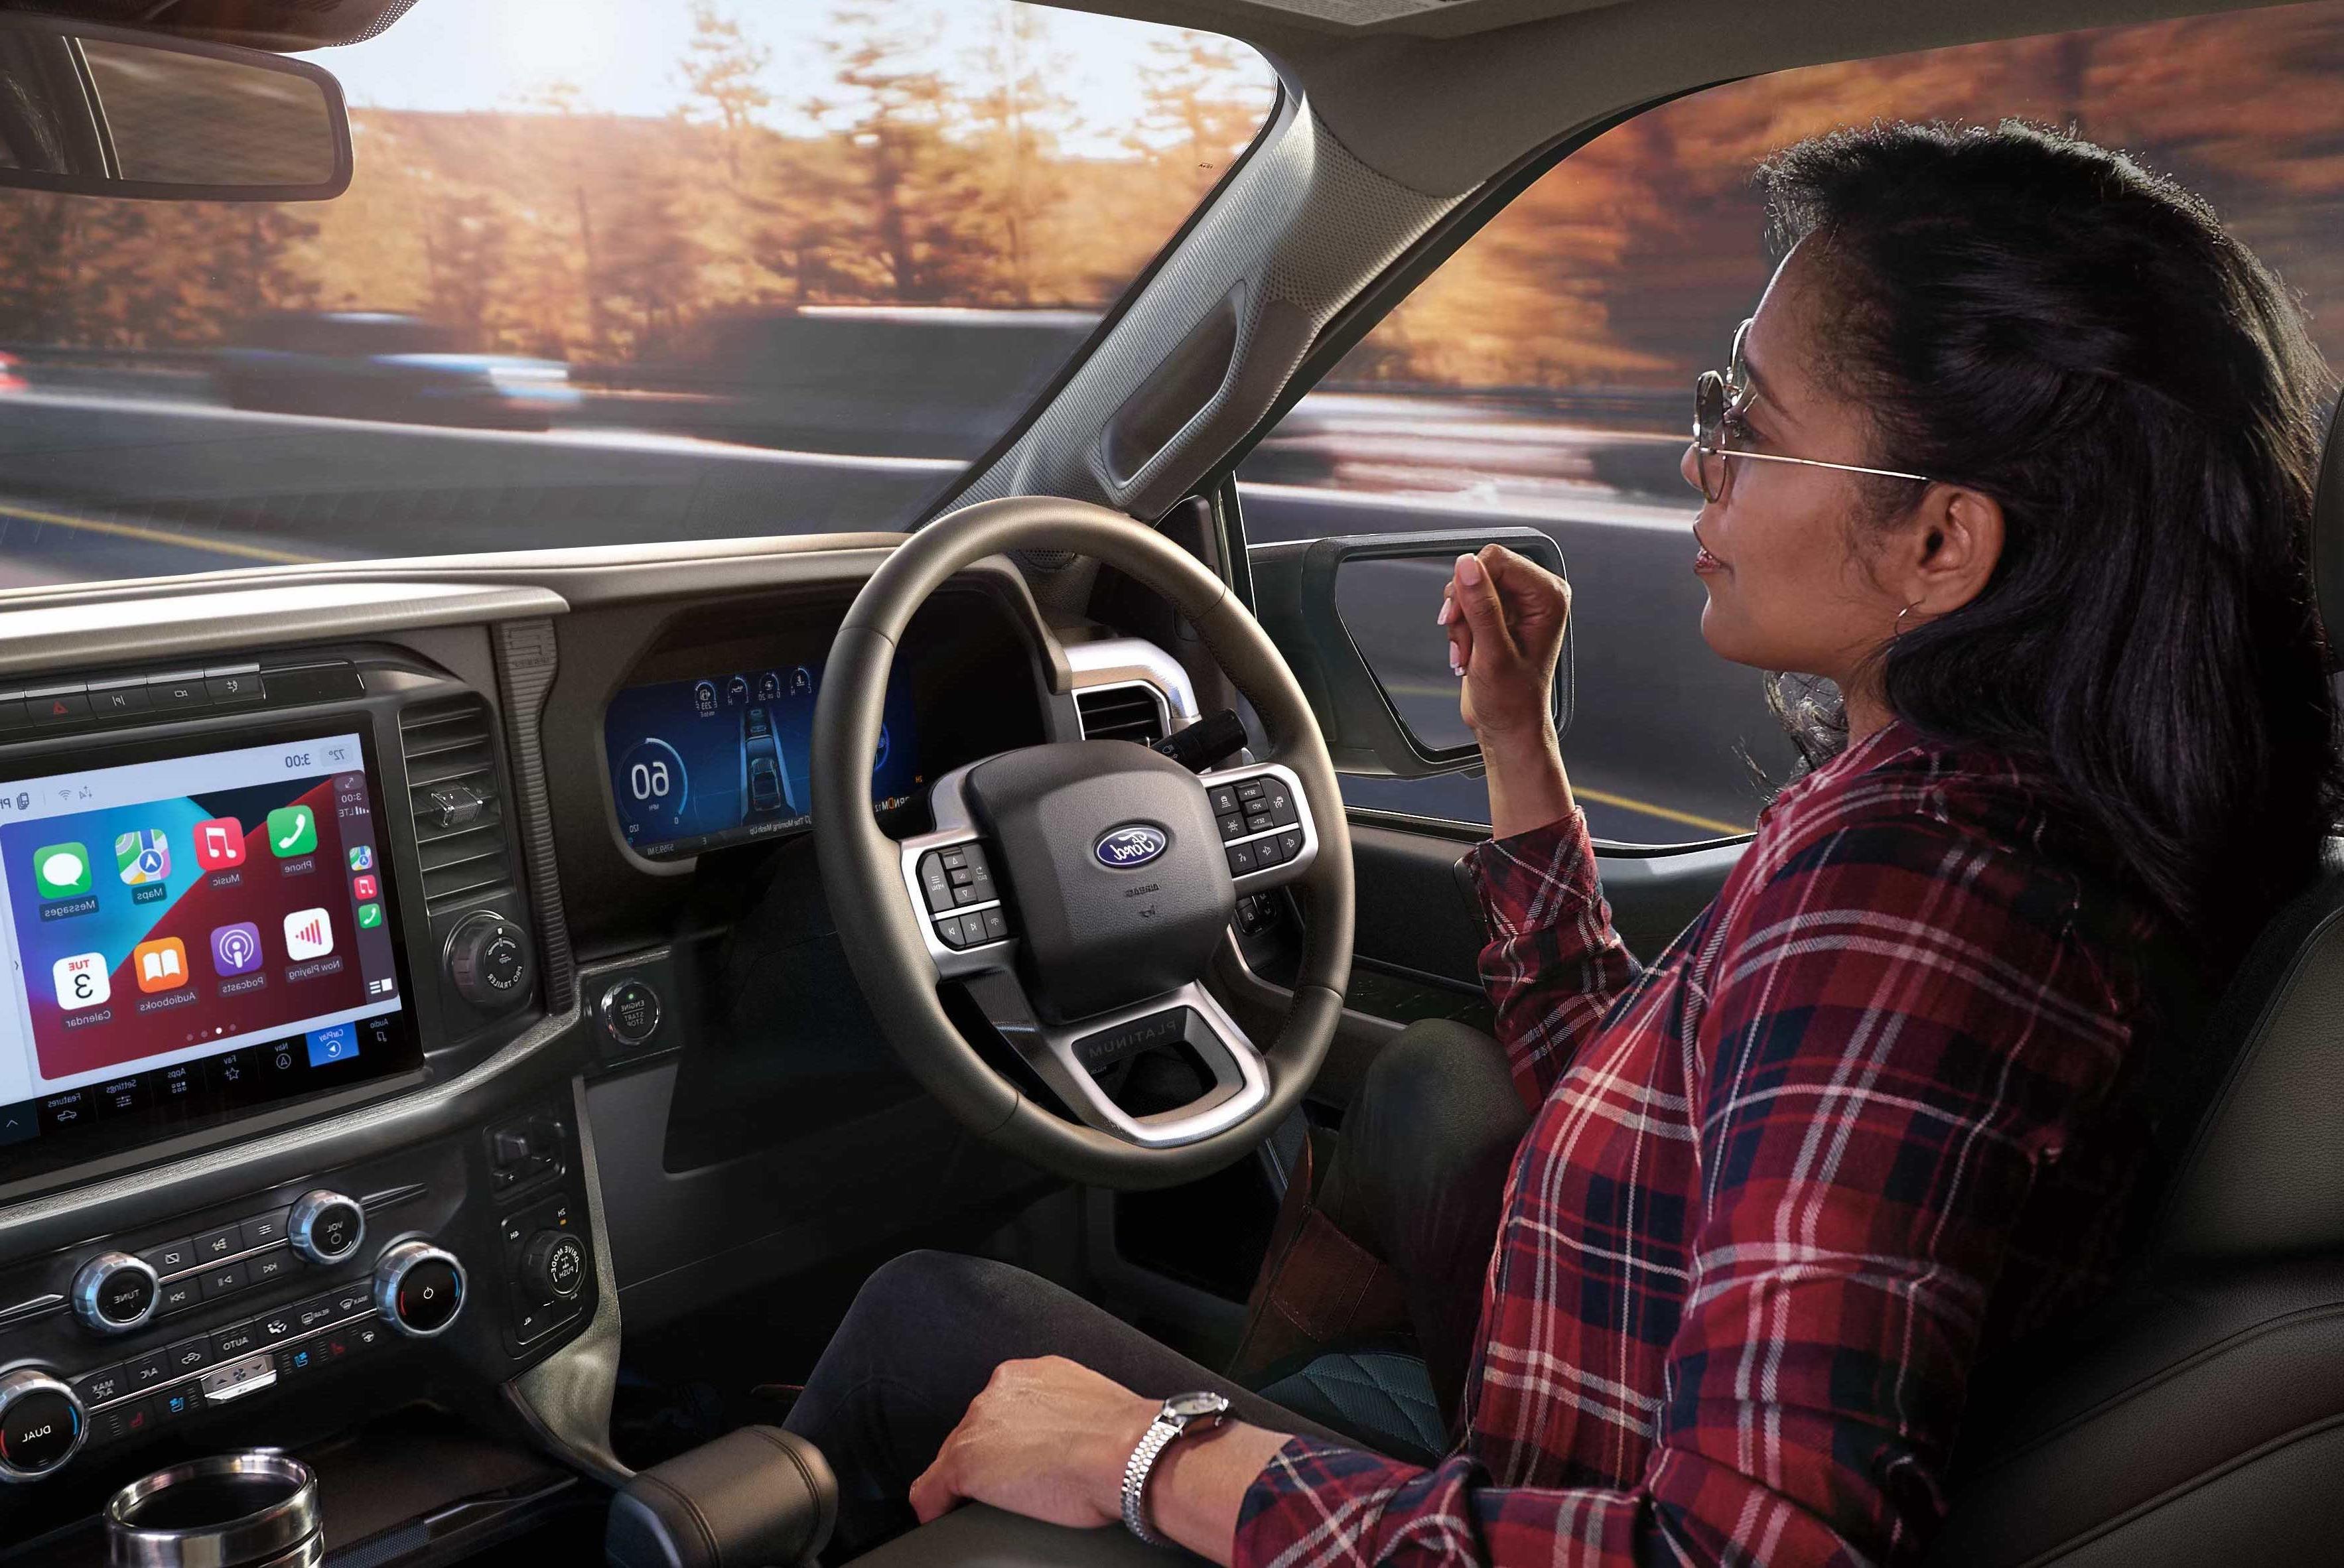 驾驶员的视角的平视显示器投影到挡风玻璃观看福特蓝巡航屏幕